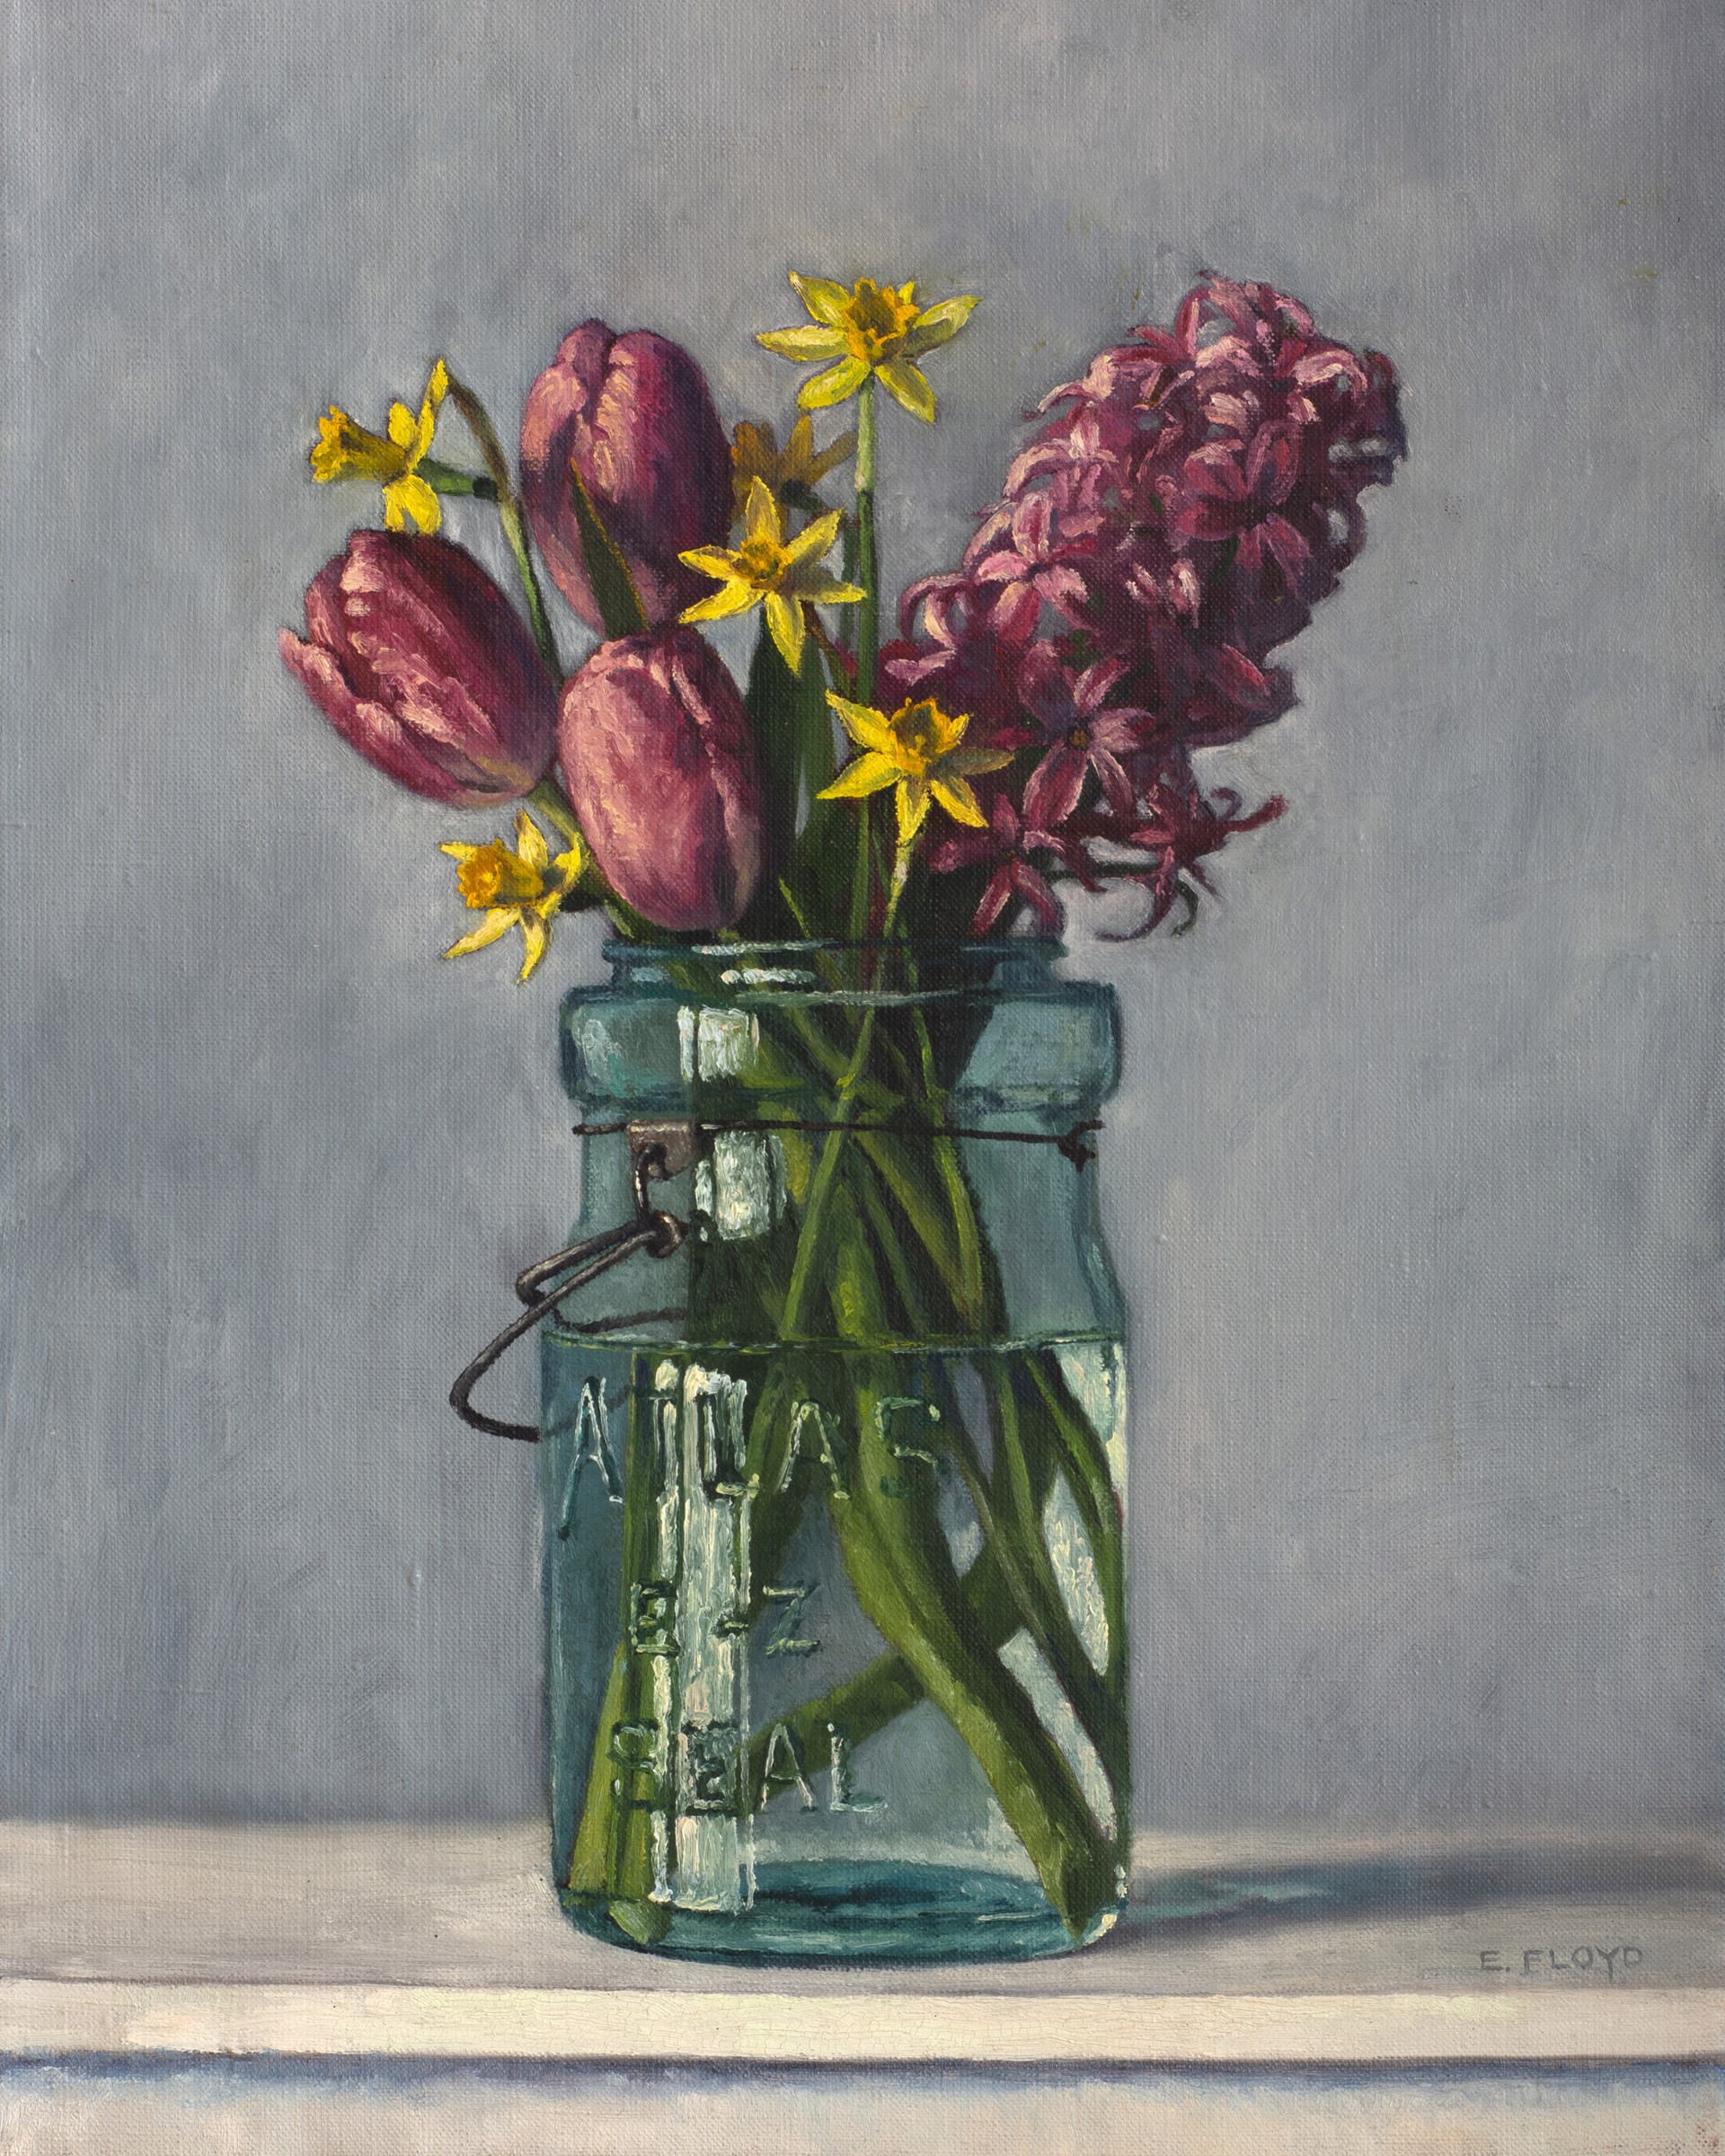 Hyacinth Tulips and Daffodils by Elizabeth Floyd